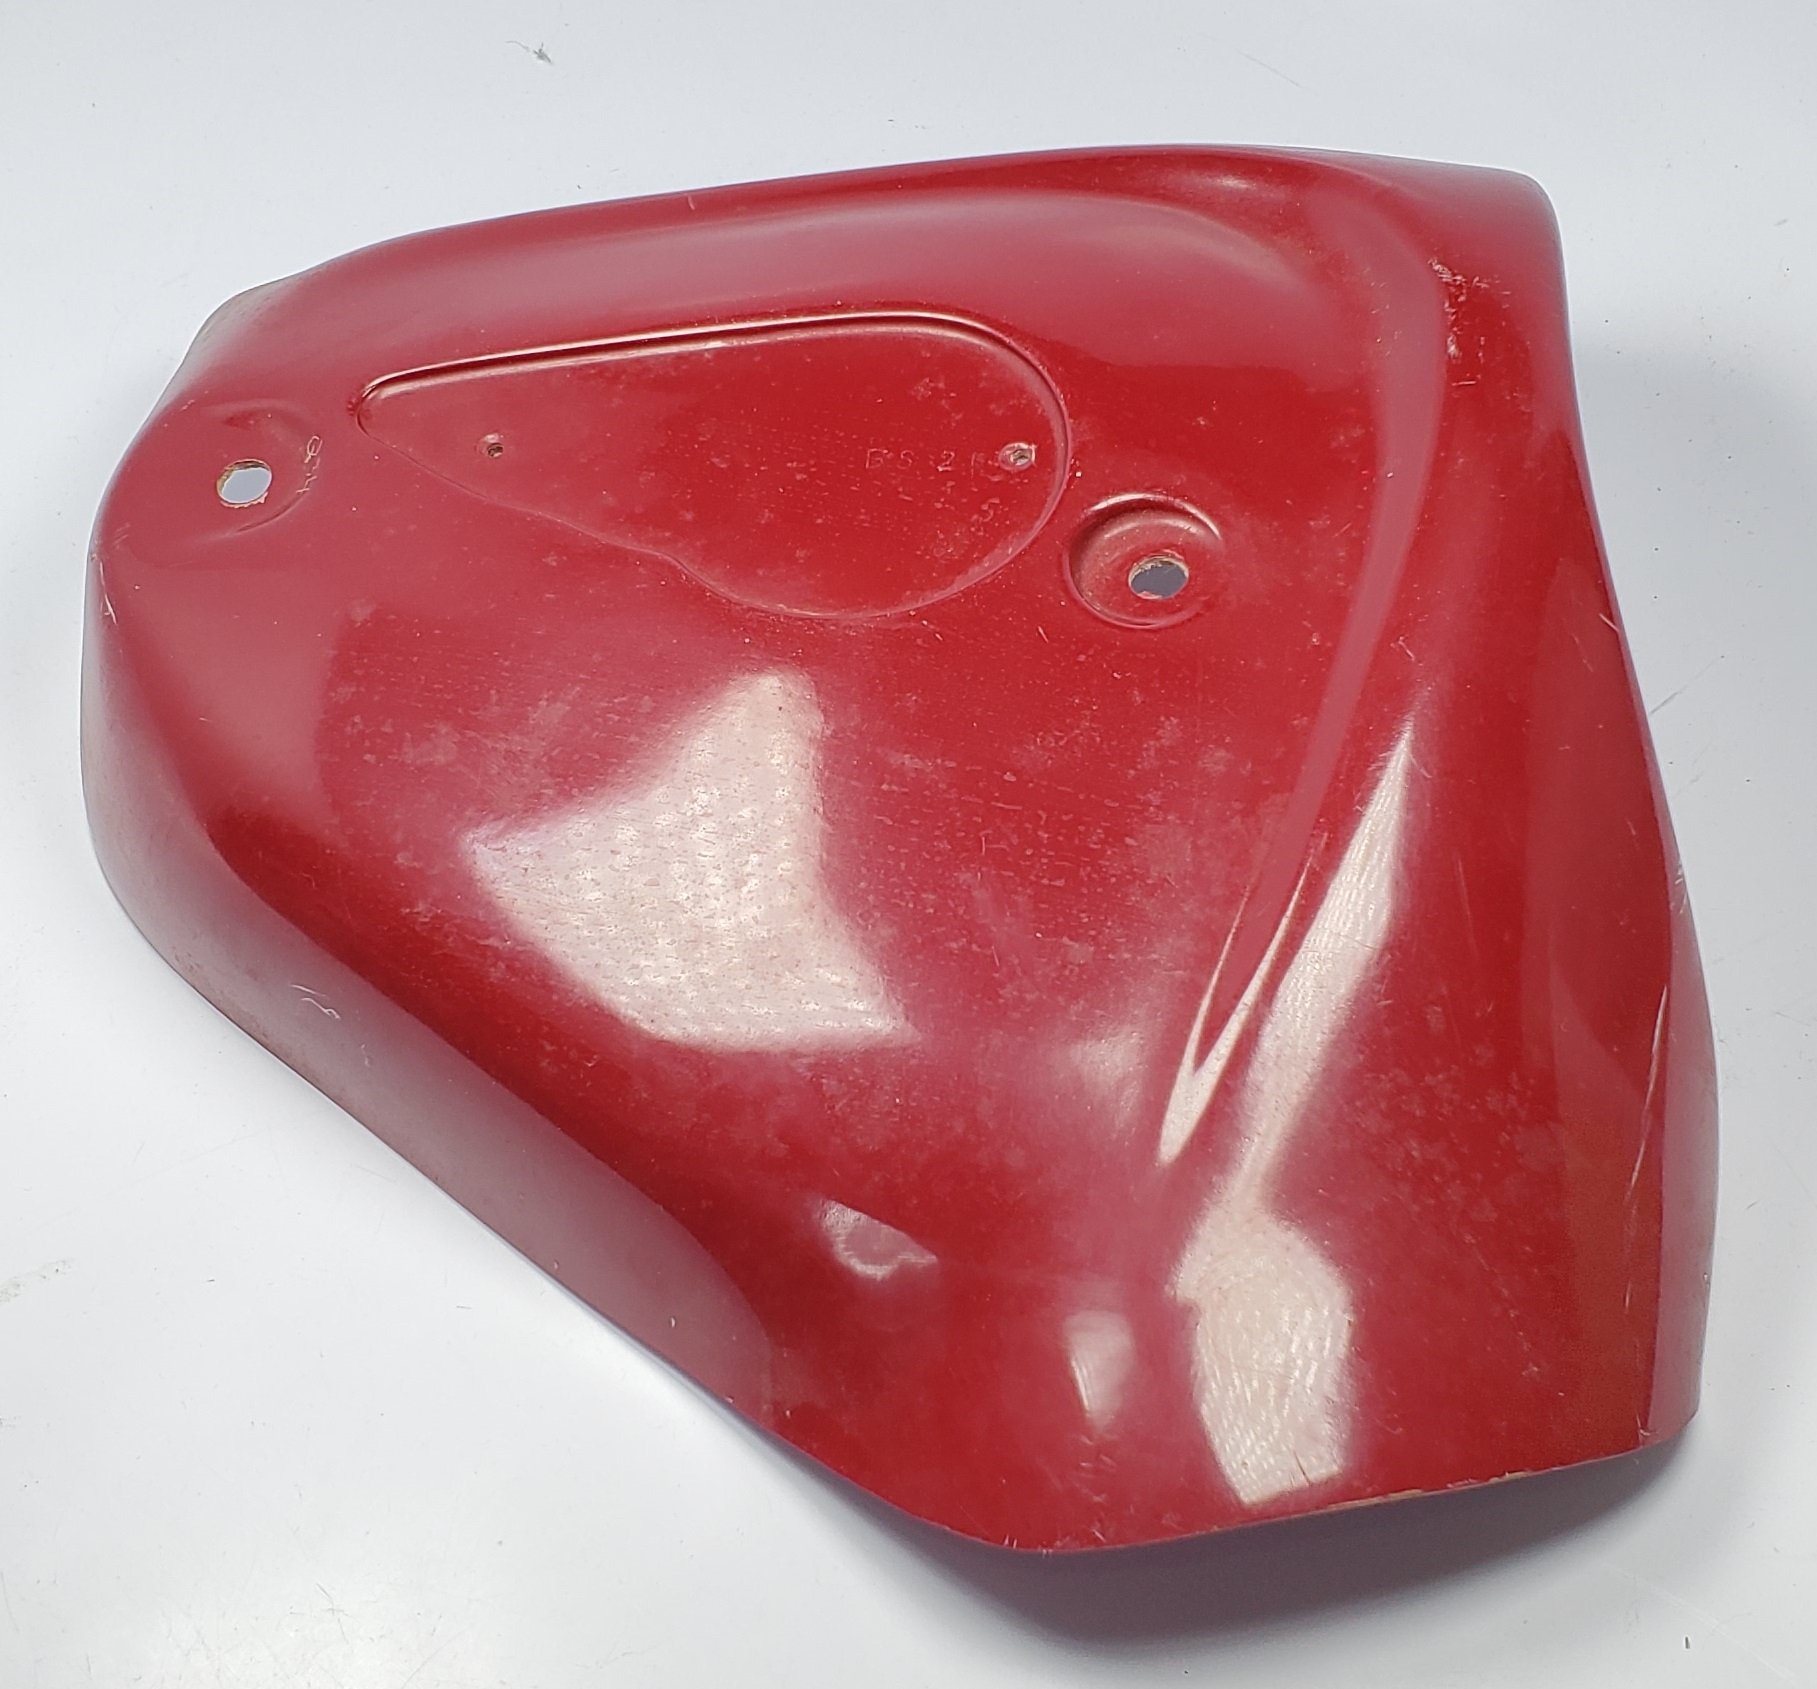 68-9281 – Red – Fiberglass – UK – Baxter Cycle